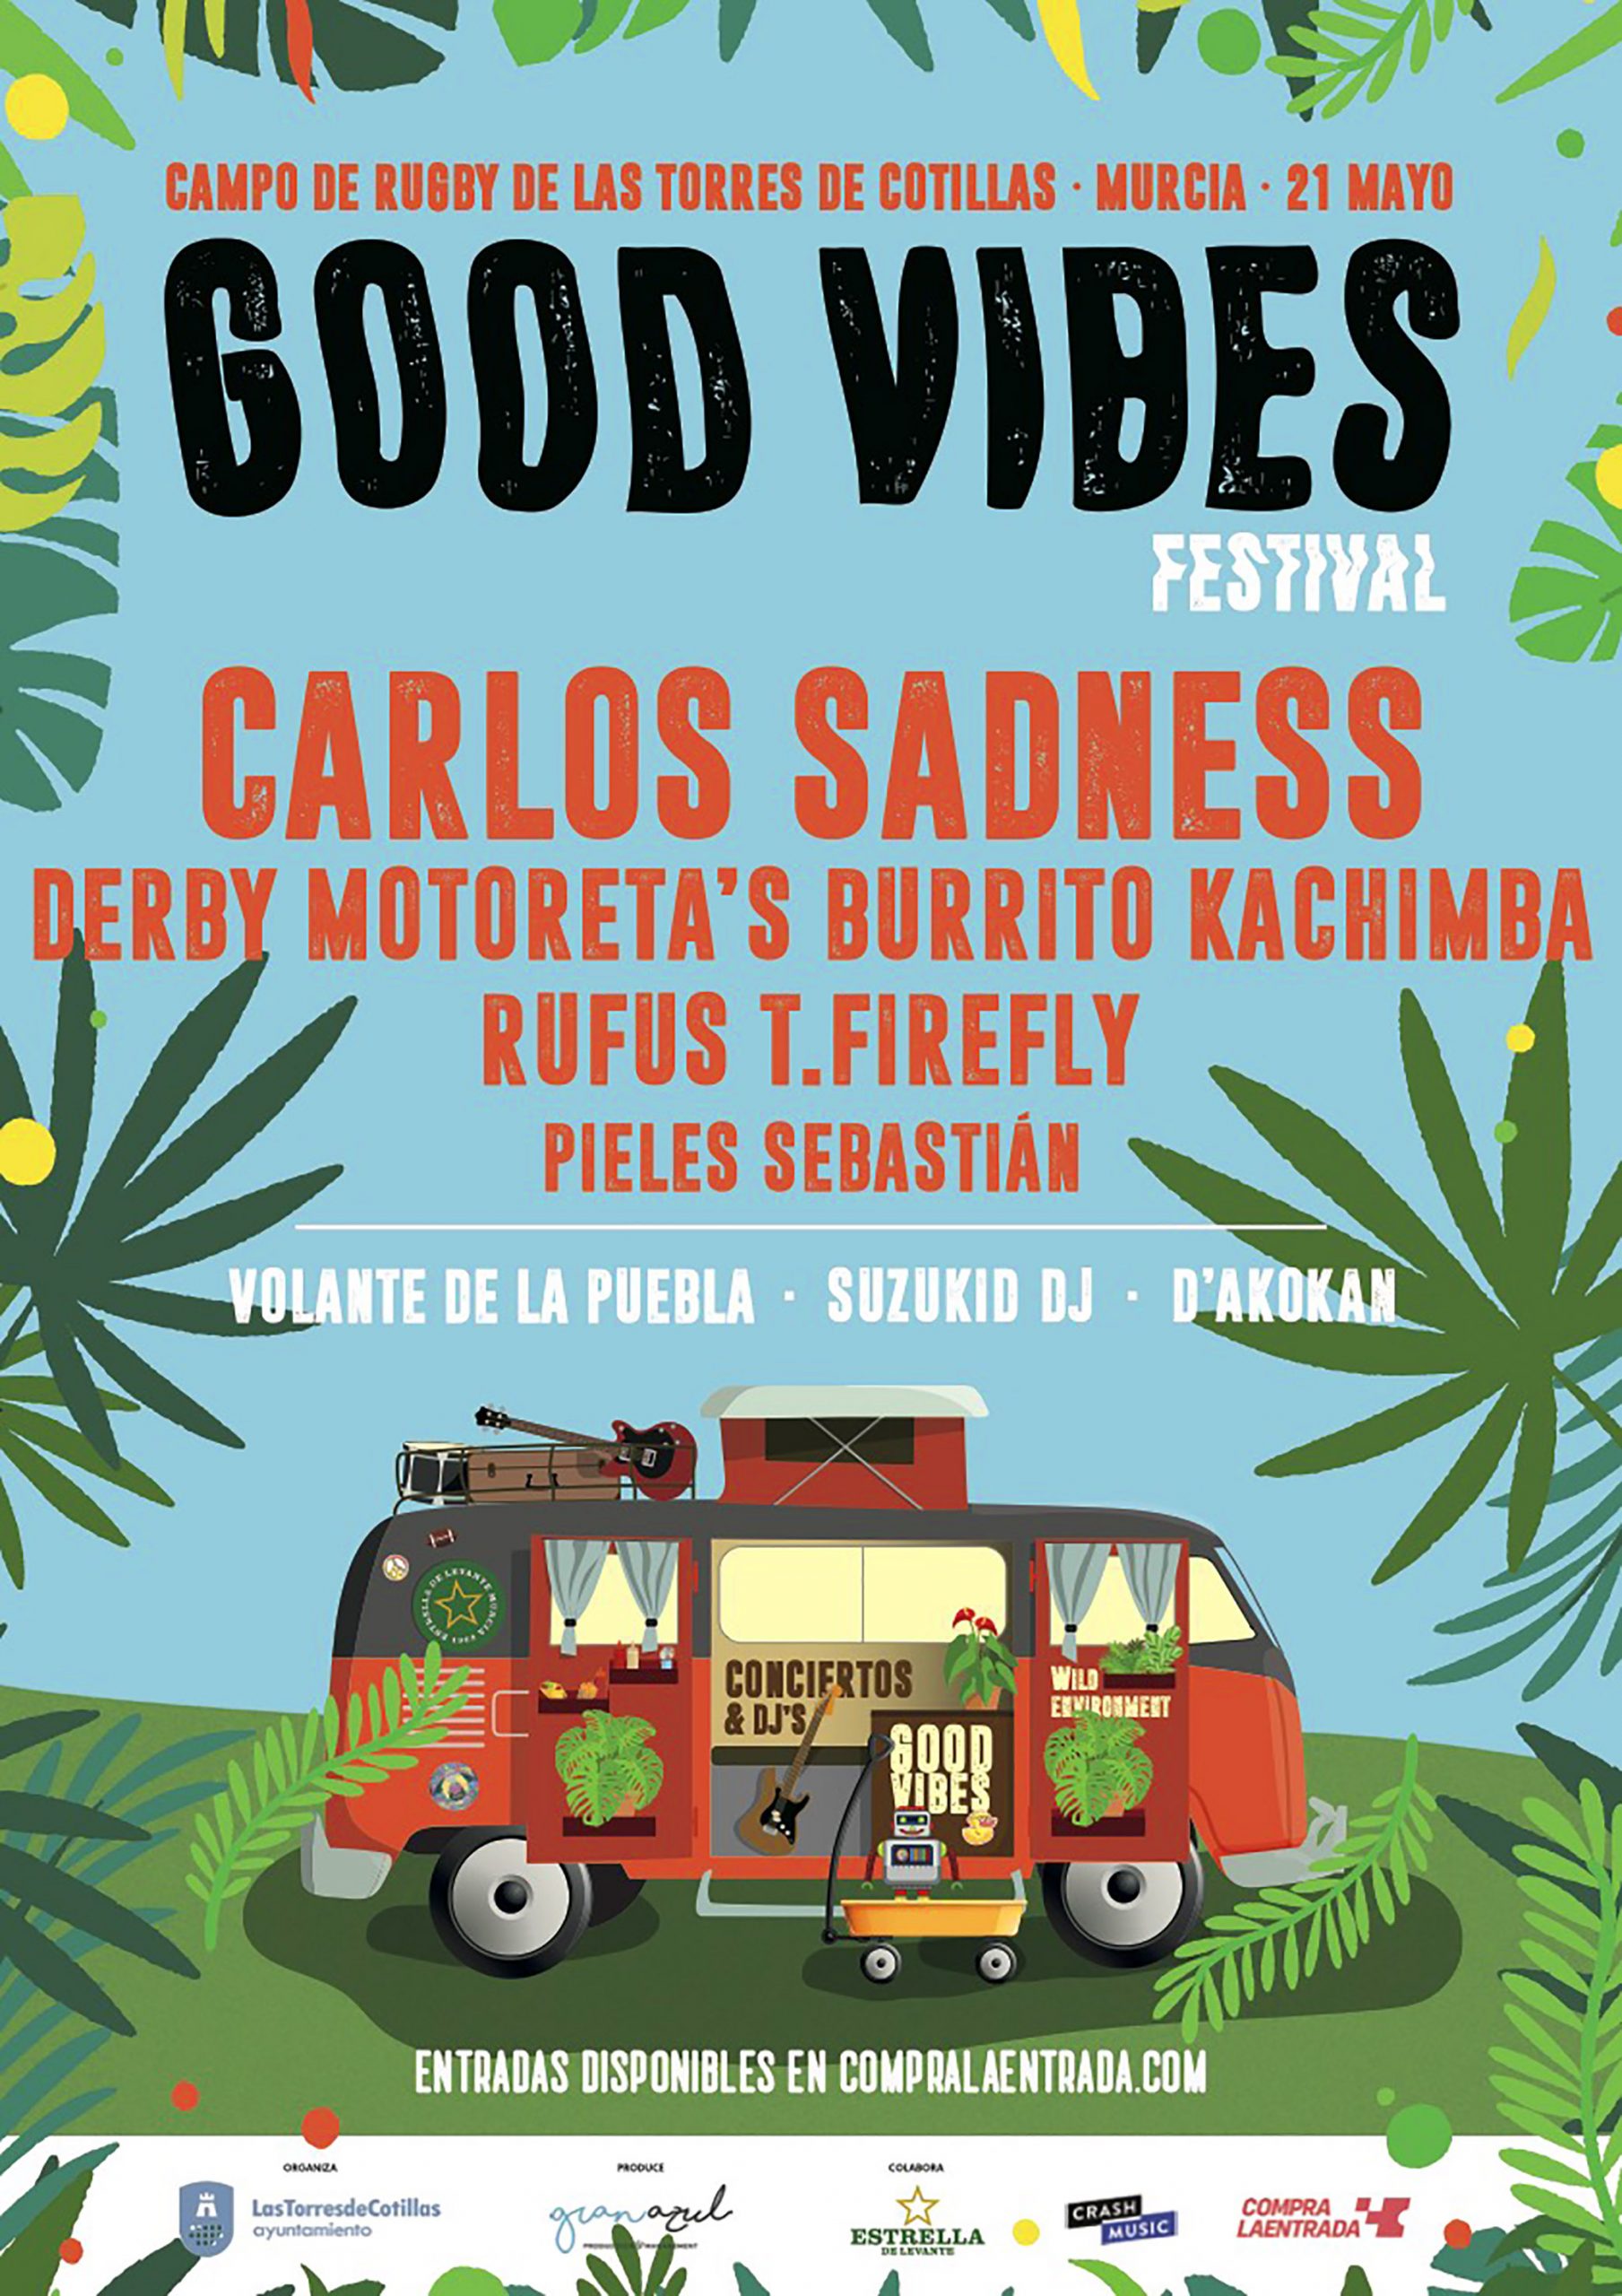 Good Vibes Festival” de Las Torres de Cotillas